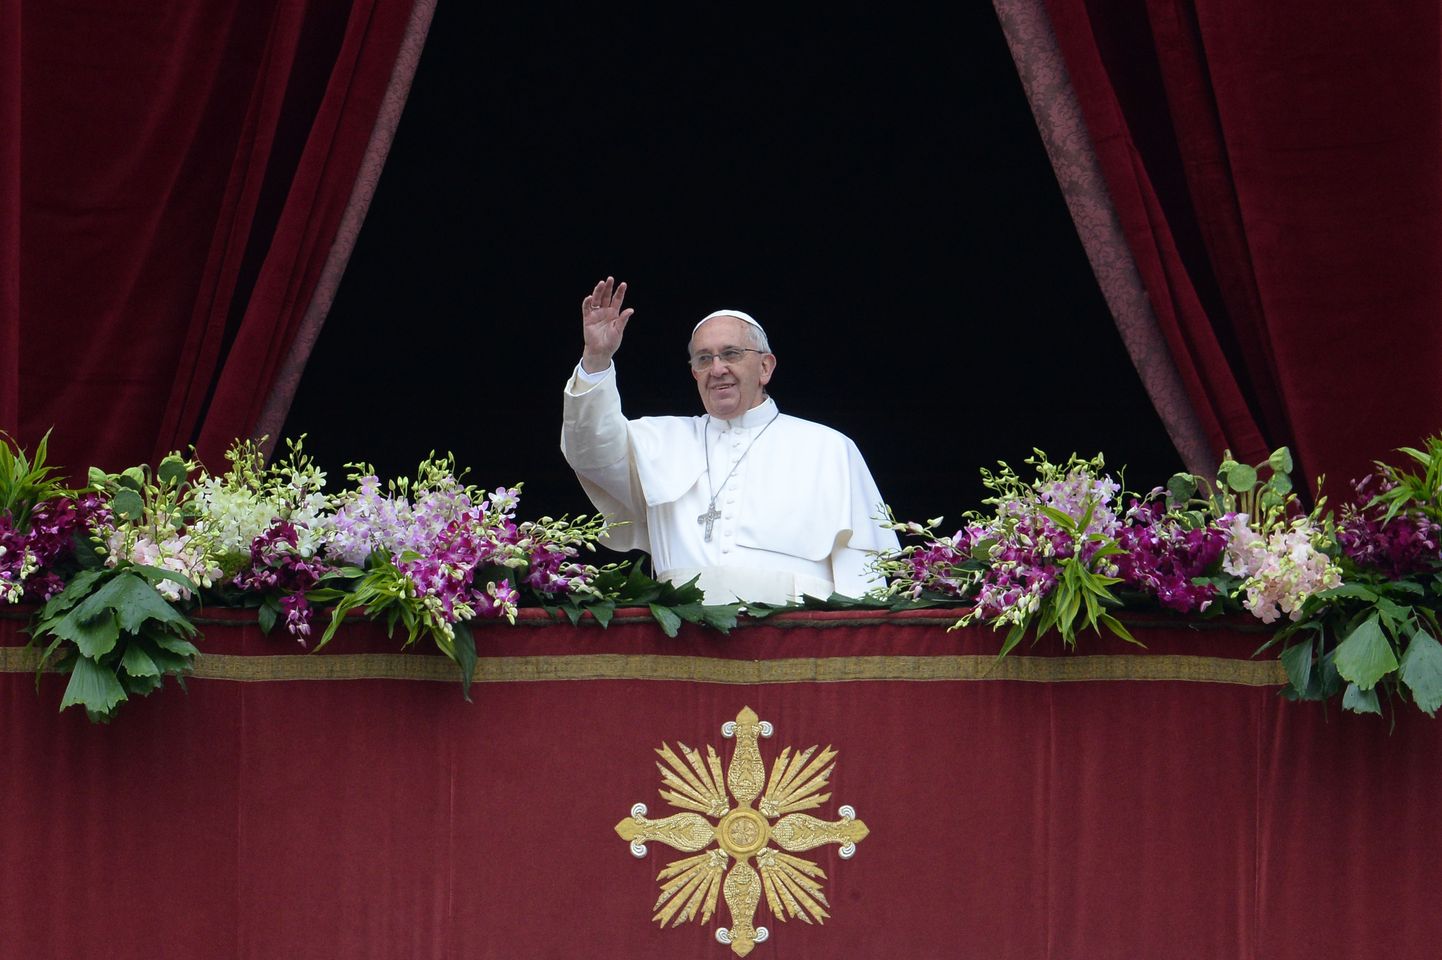 Папа римский Франциск.